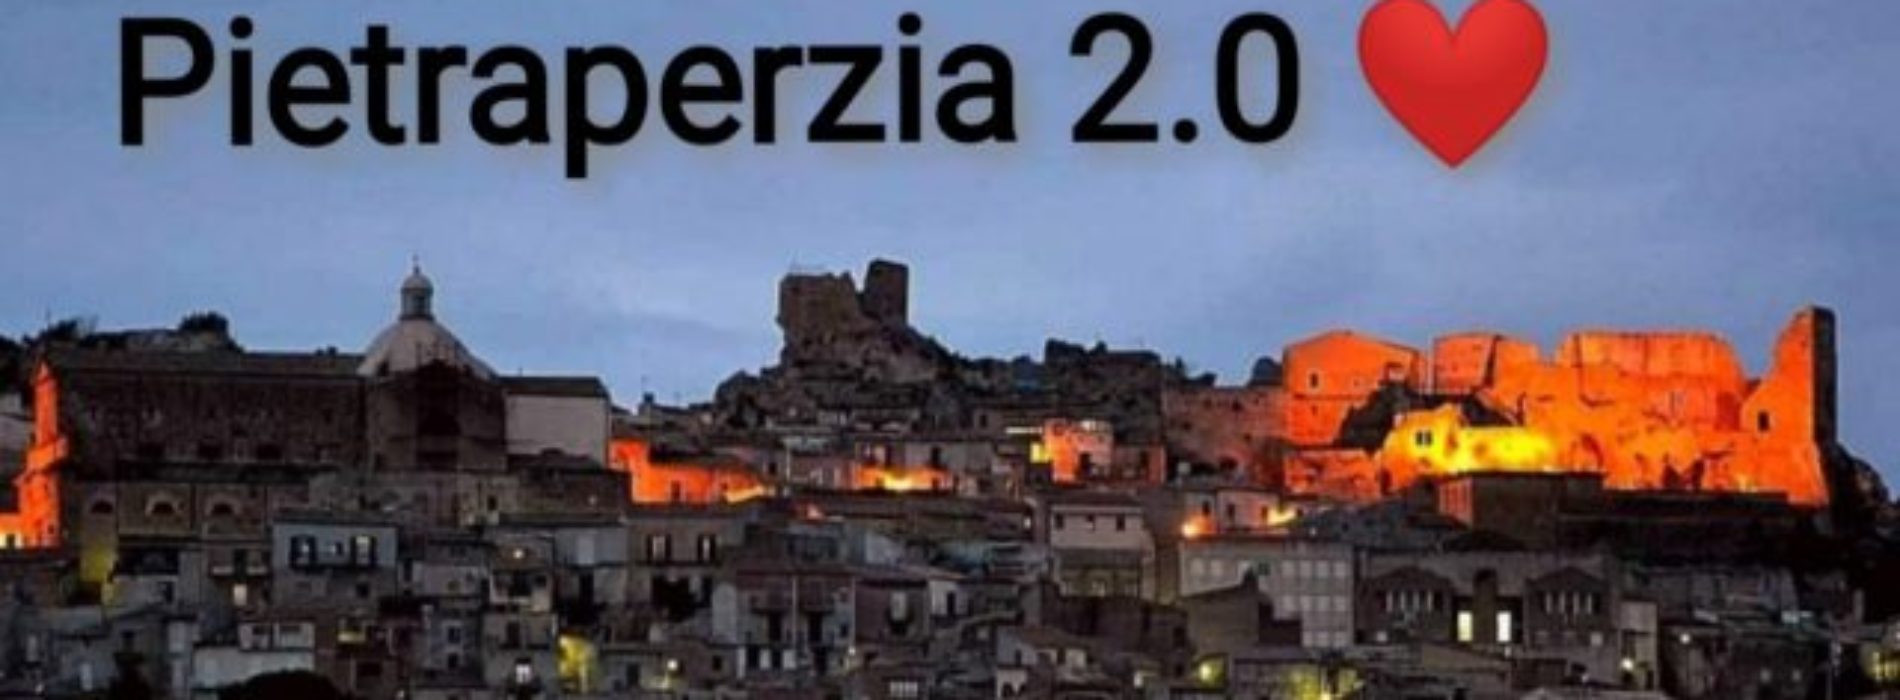 PIETRAPERZIA. È nato un nuovo gruppo facebook. Si chiama “Pietraperzia 2.0”.